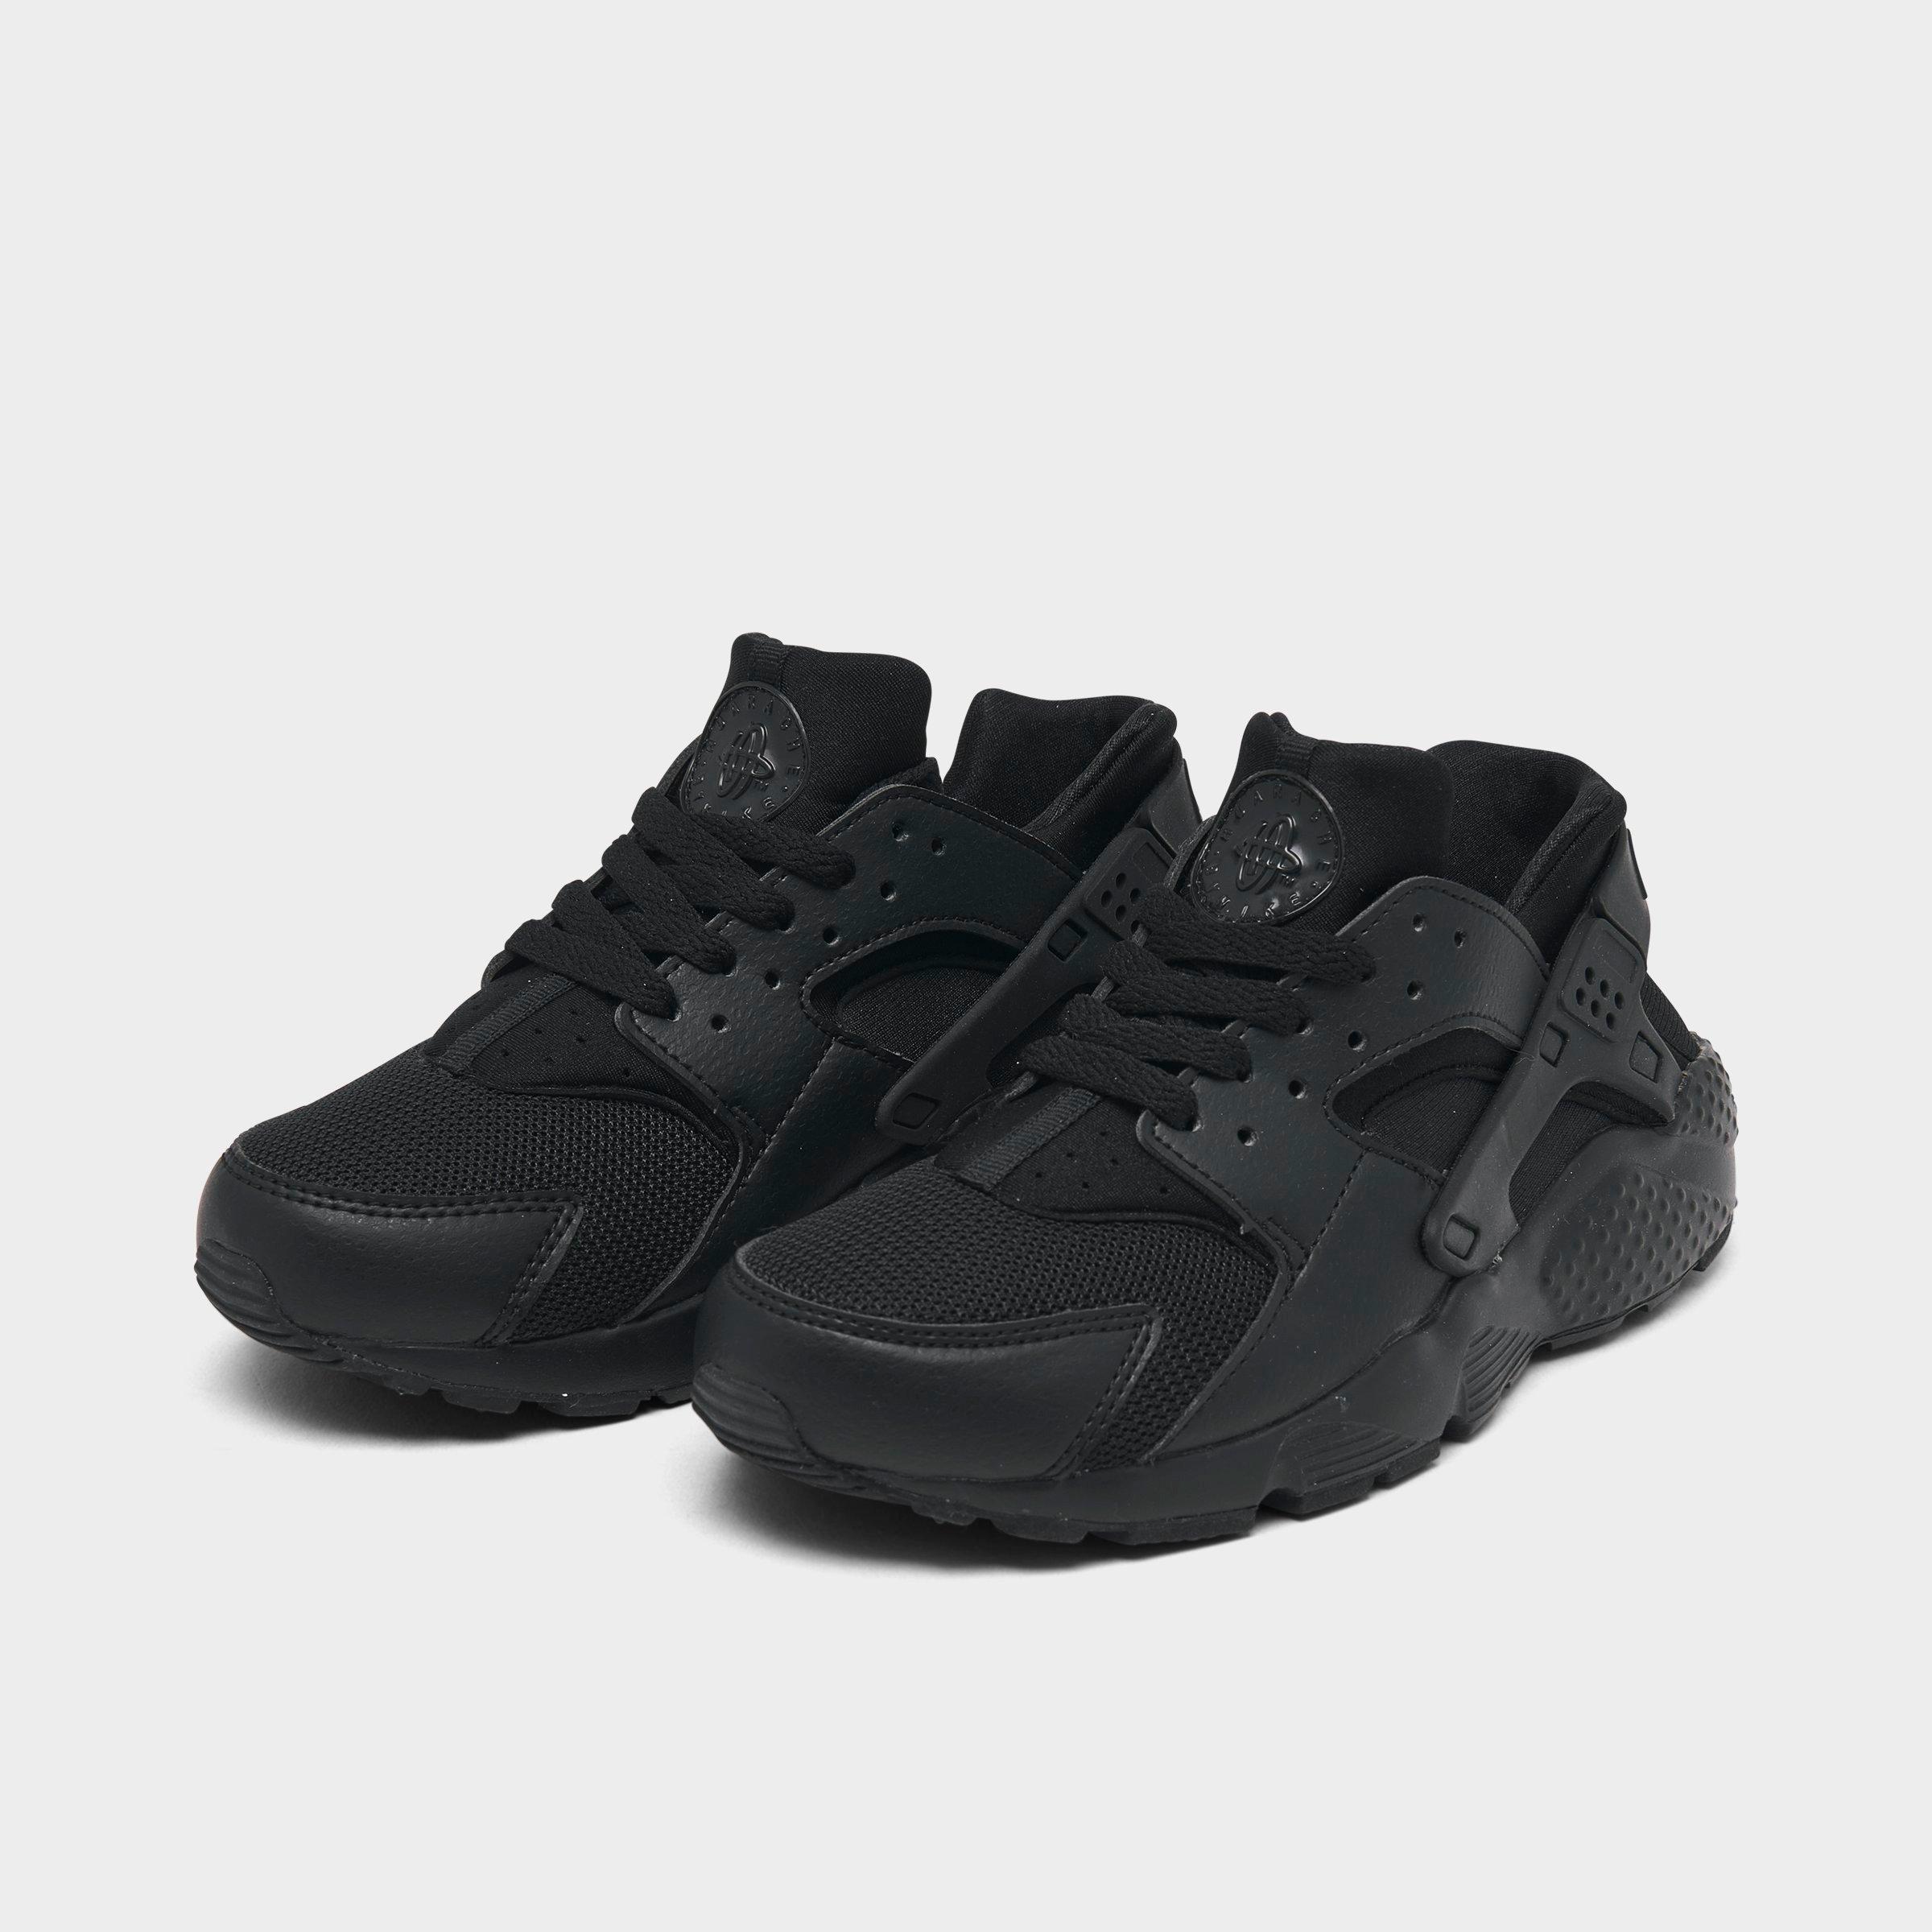 huarache shoes black